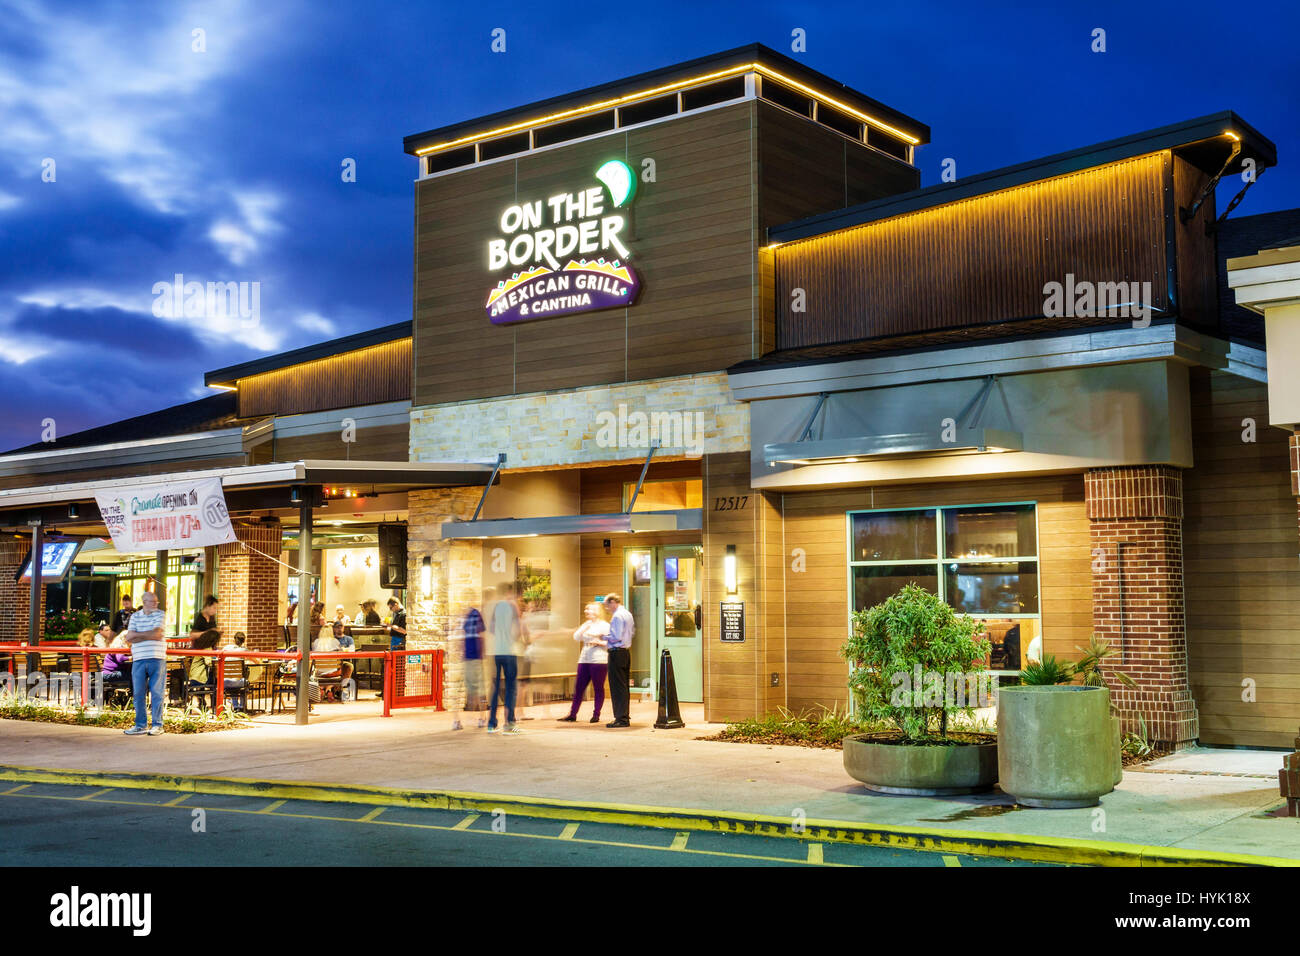 Orlando Florida, Kreuzung von Lake Buena Vista, Restaurants, Shopping plaza, außen, an der Grenze, mexikanischer Grill, Cantina, Restaurant Restaurants Essen Essen Essen c Stockfoto